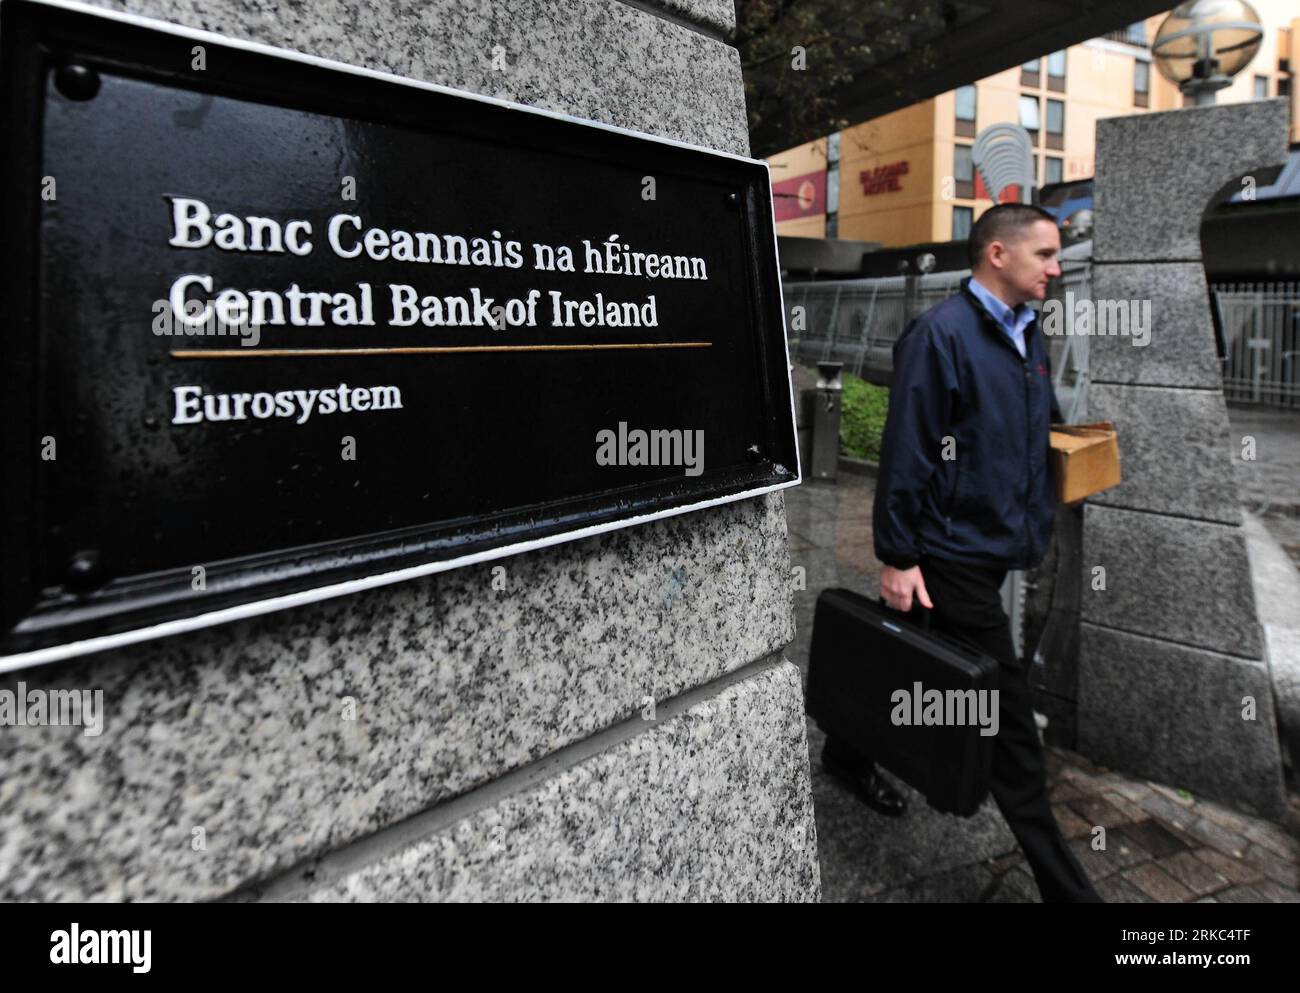 Bildnummer : 54666202 Datum : 22.11.2010 Copyright : imago/Xinhua (101122) -- DUBLIN, 22 novembre 2010 (Xinhua) -- un homme sort de la Banque centrale d'Irlande à Dublin, Irlande, 22 novembre 2010. Dimanche soir, le Premier ministre irlandais Brian Cowen a confirmé que l'Union européenne (UE) avait accepté la demande du gouvernement irlandais d'un paquet d'aide financière de l'UE et du Fonds monétaire international (FMI). (Xinhua/Zeng Yi) IRLANDE-DUBLIN-CRISE DE LA DETTE-SAUVETAGE PUBLICATIONxNOTxINxCHN Wirtschaft Finanzkrise Banken Bankenkrise Irland Krise Finanzen kbdig xng 2010 quer premiumd o0 Euro-Rettungsschirm Schu Banque D'Images